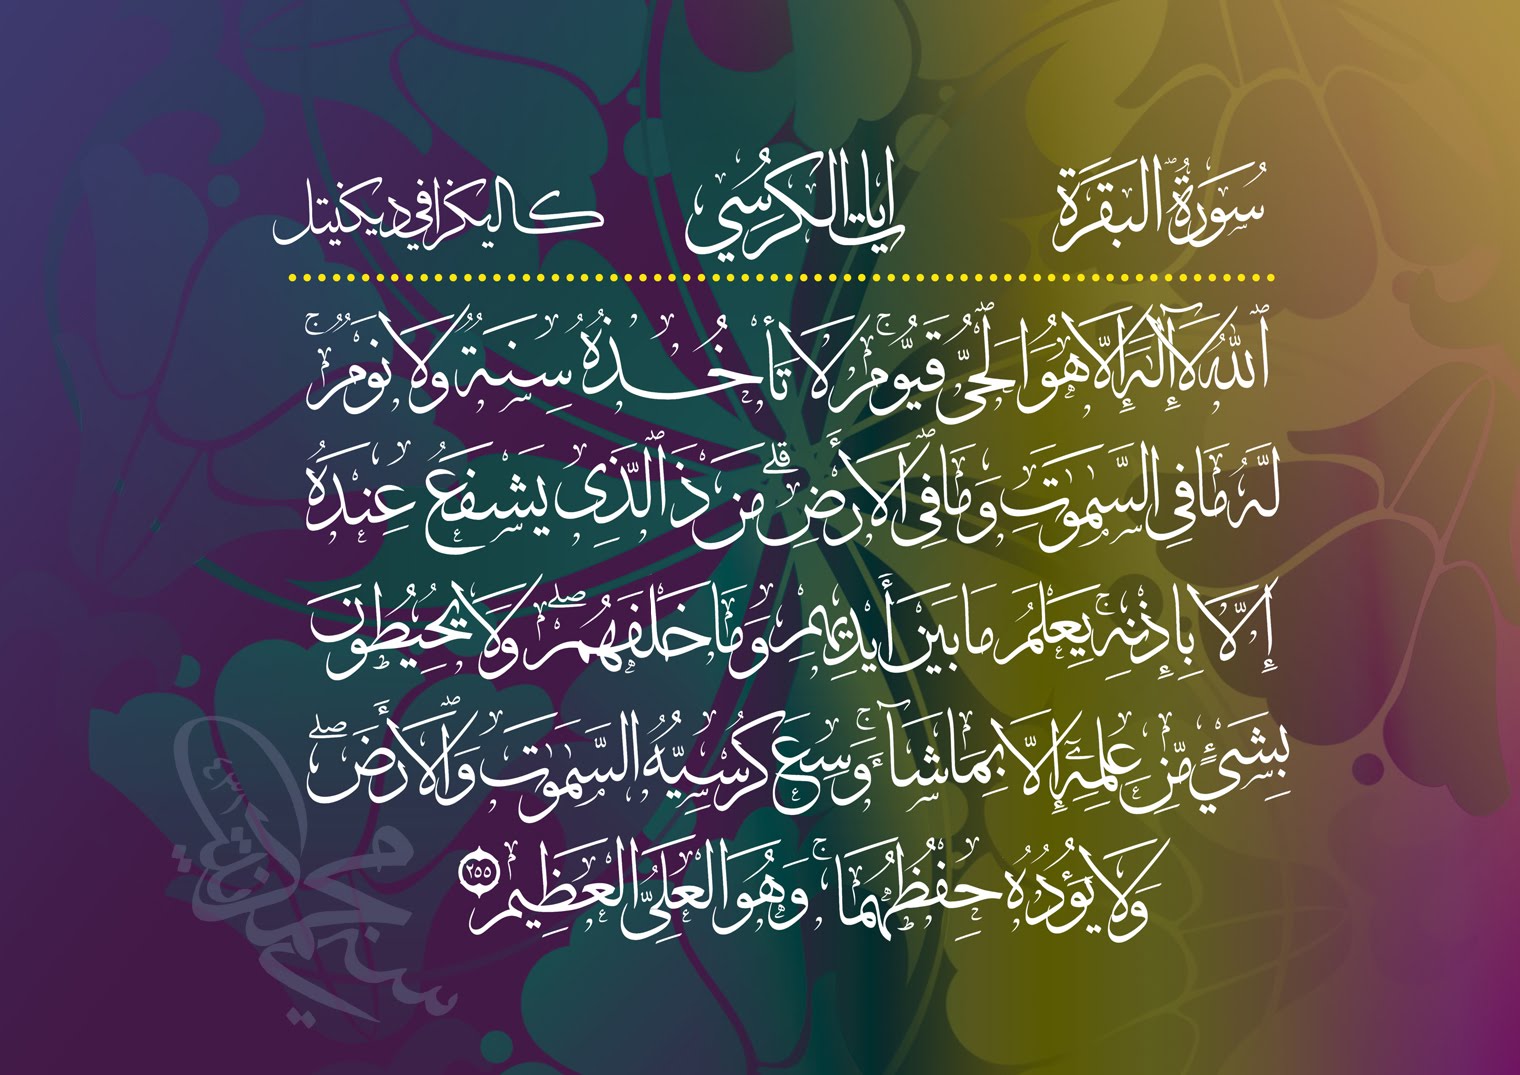 Quran Ayat  Wallpaper Hd  HD  Blast